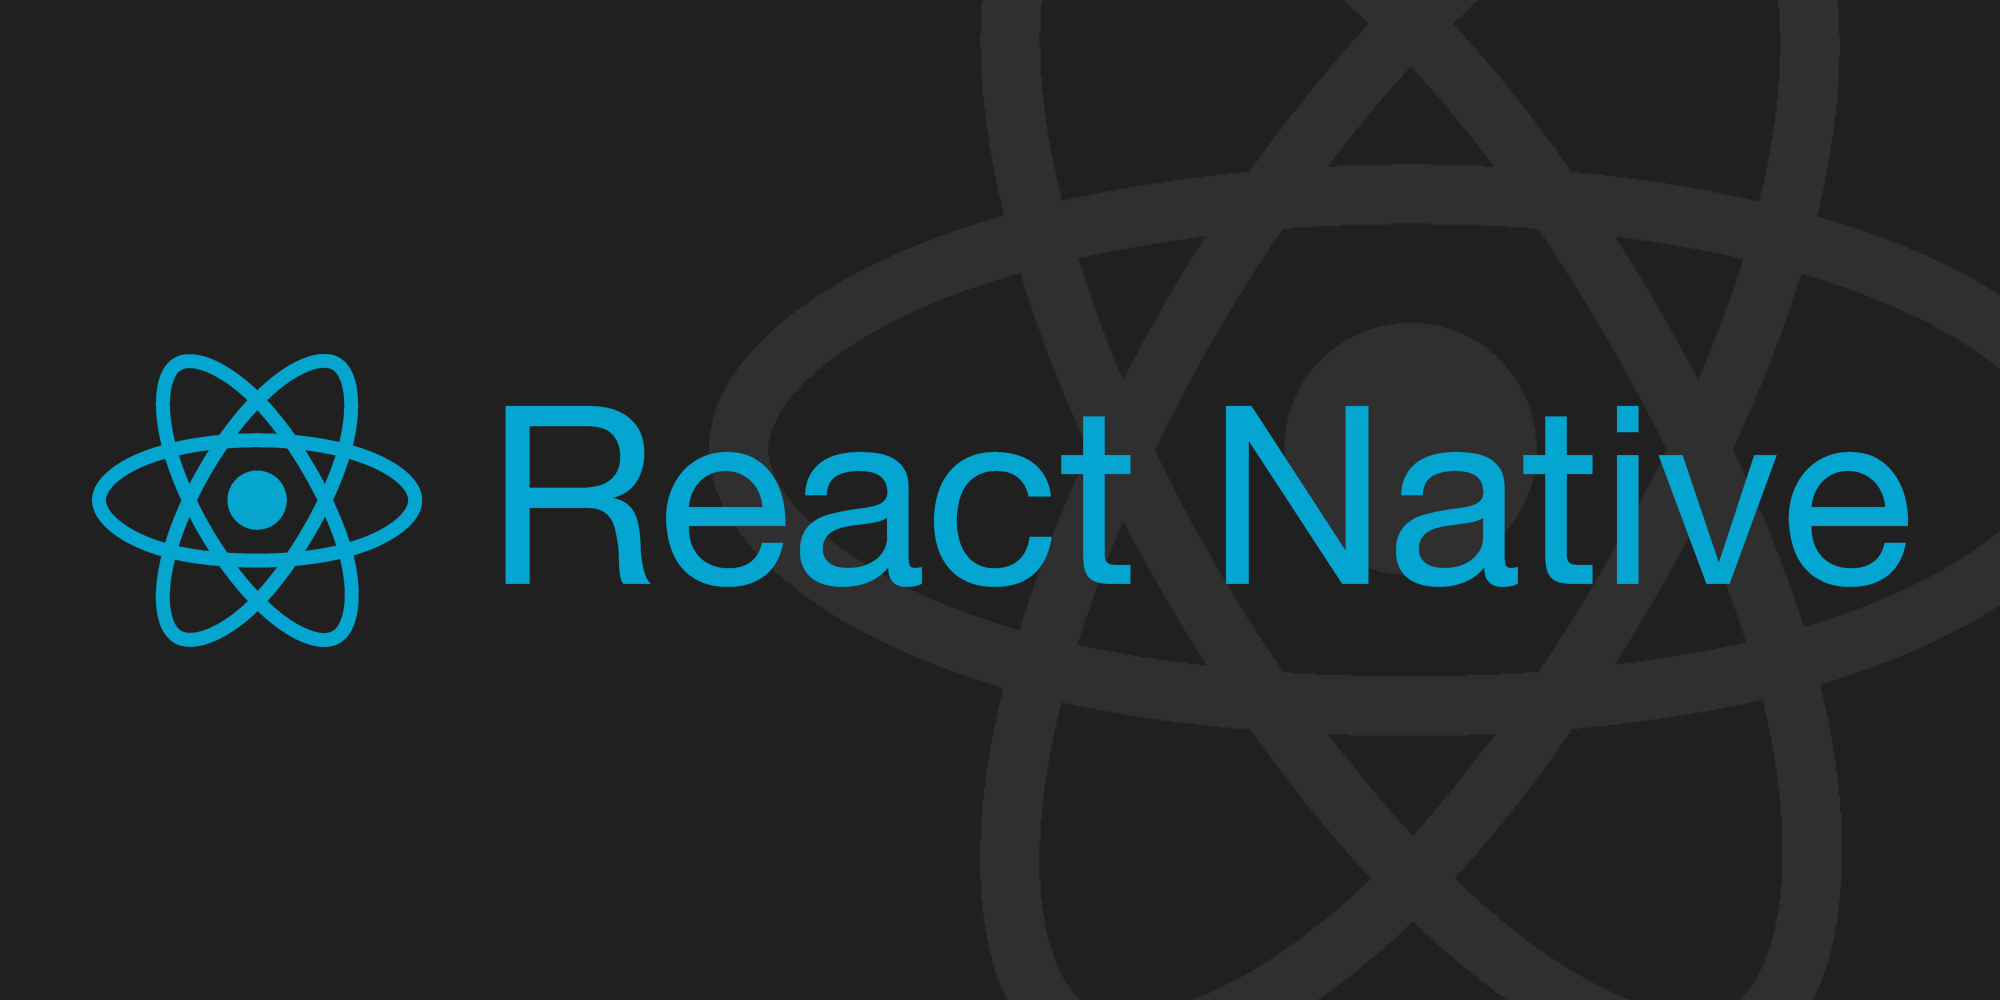 React Native là gì? Có lợi ích gì?